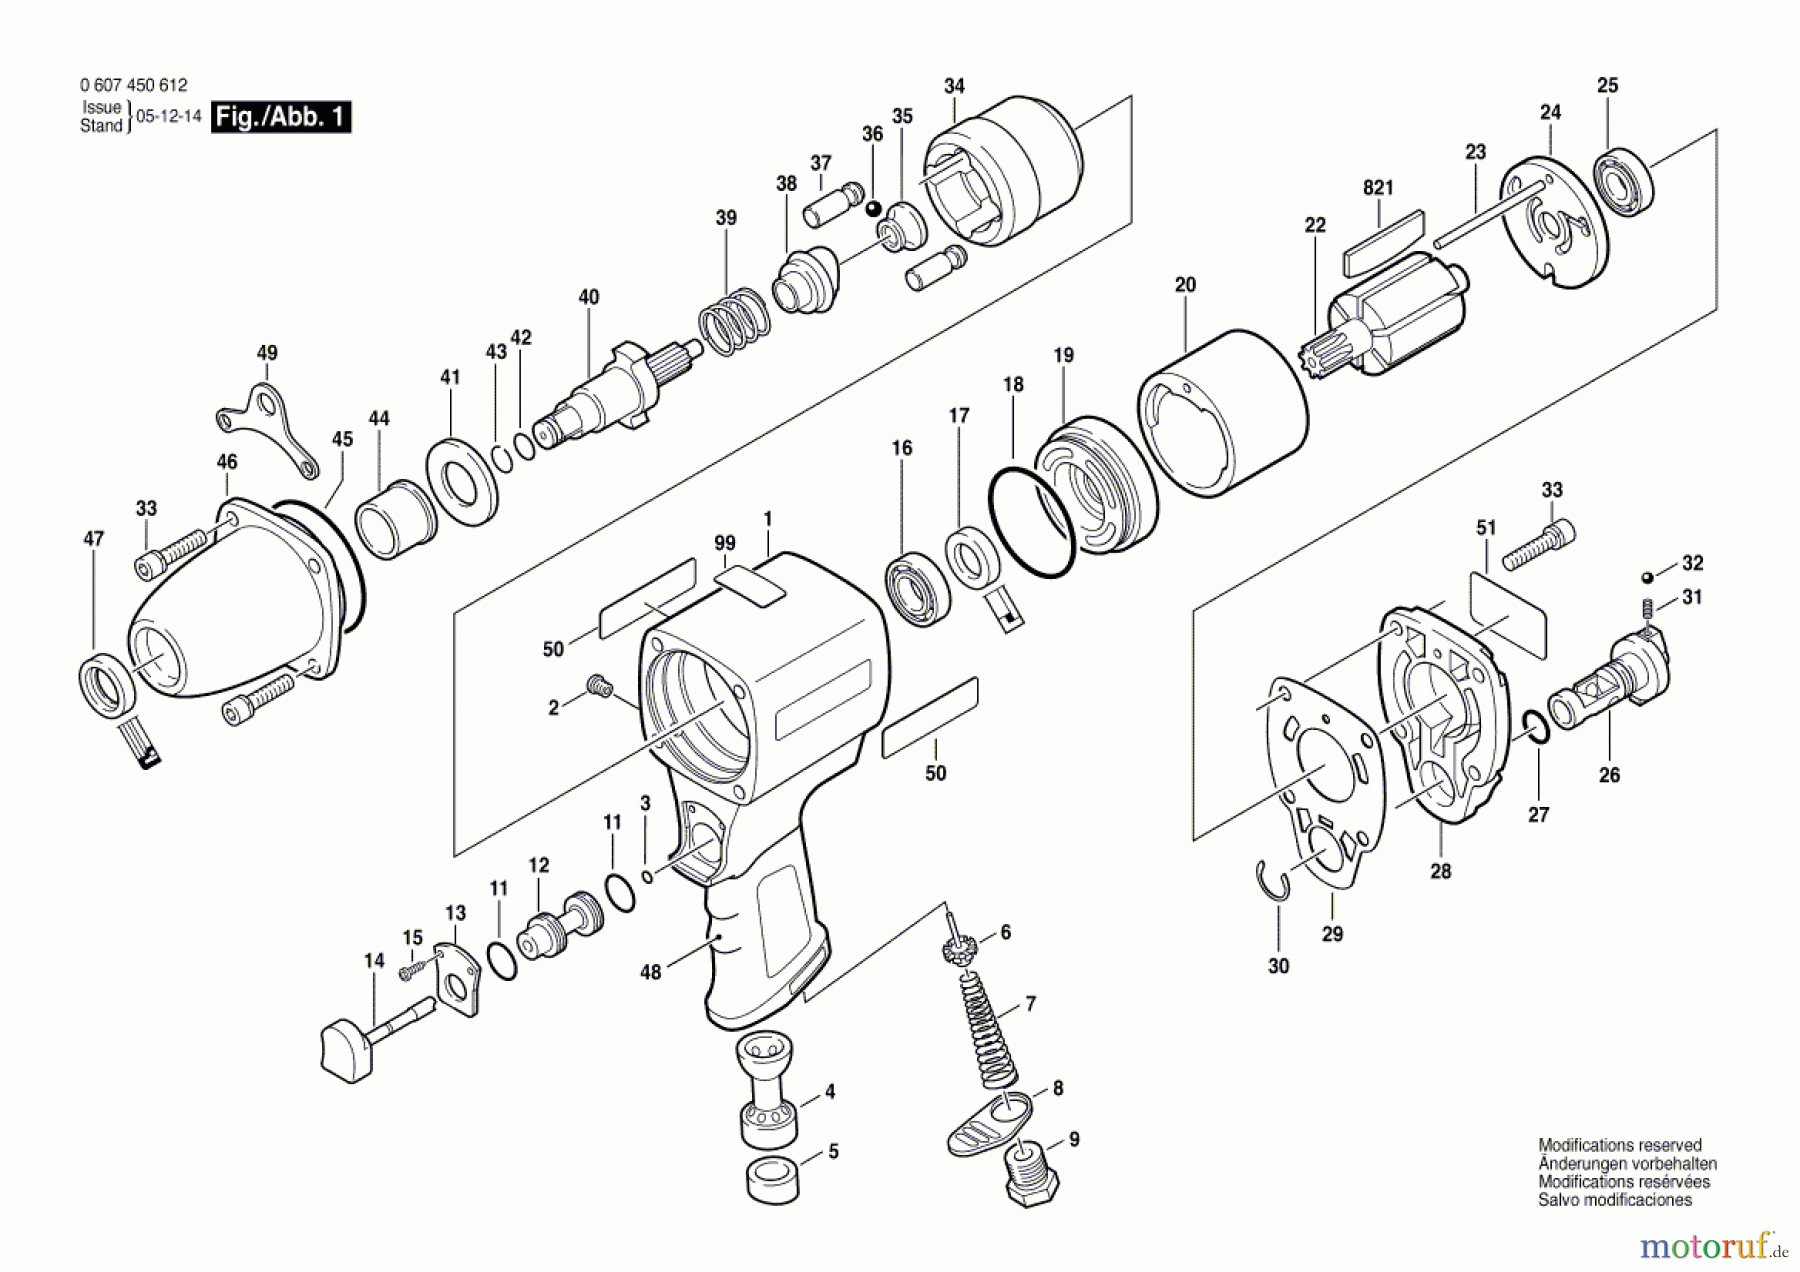  Bosch Werkzeug Schlagschrauber DDS 1/2